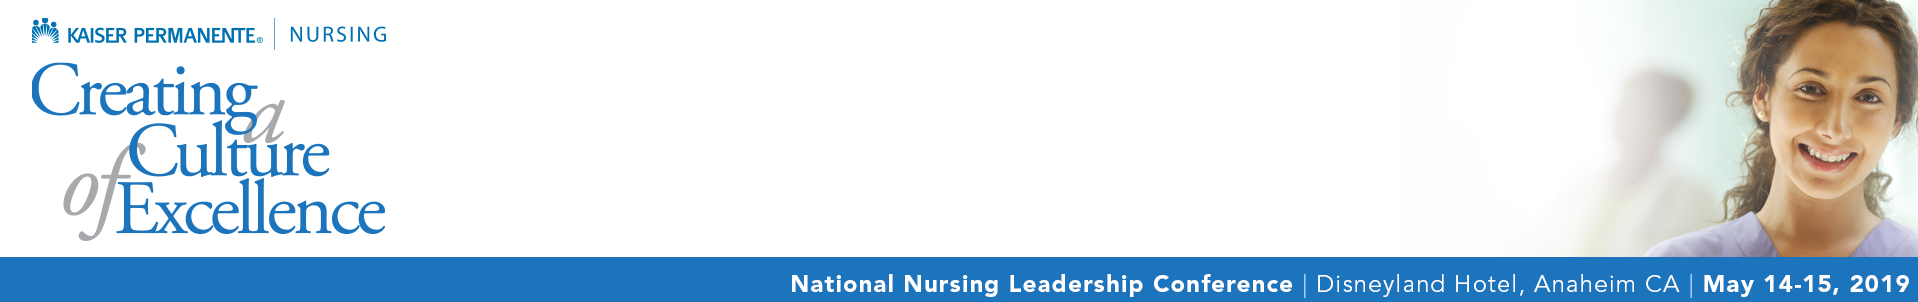 National Nursing Leadership Conference